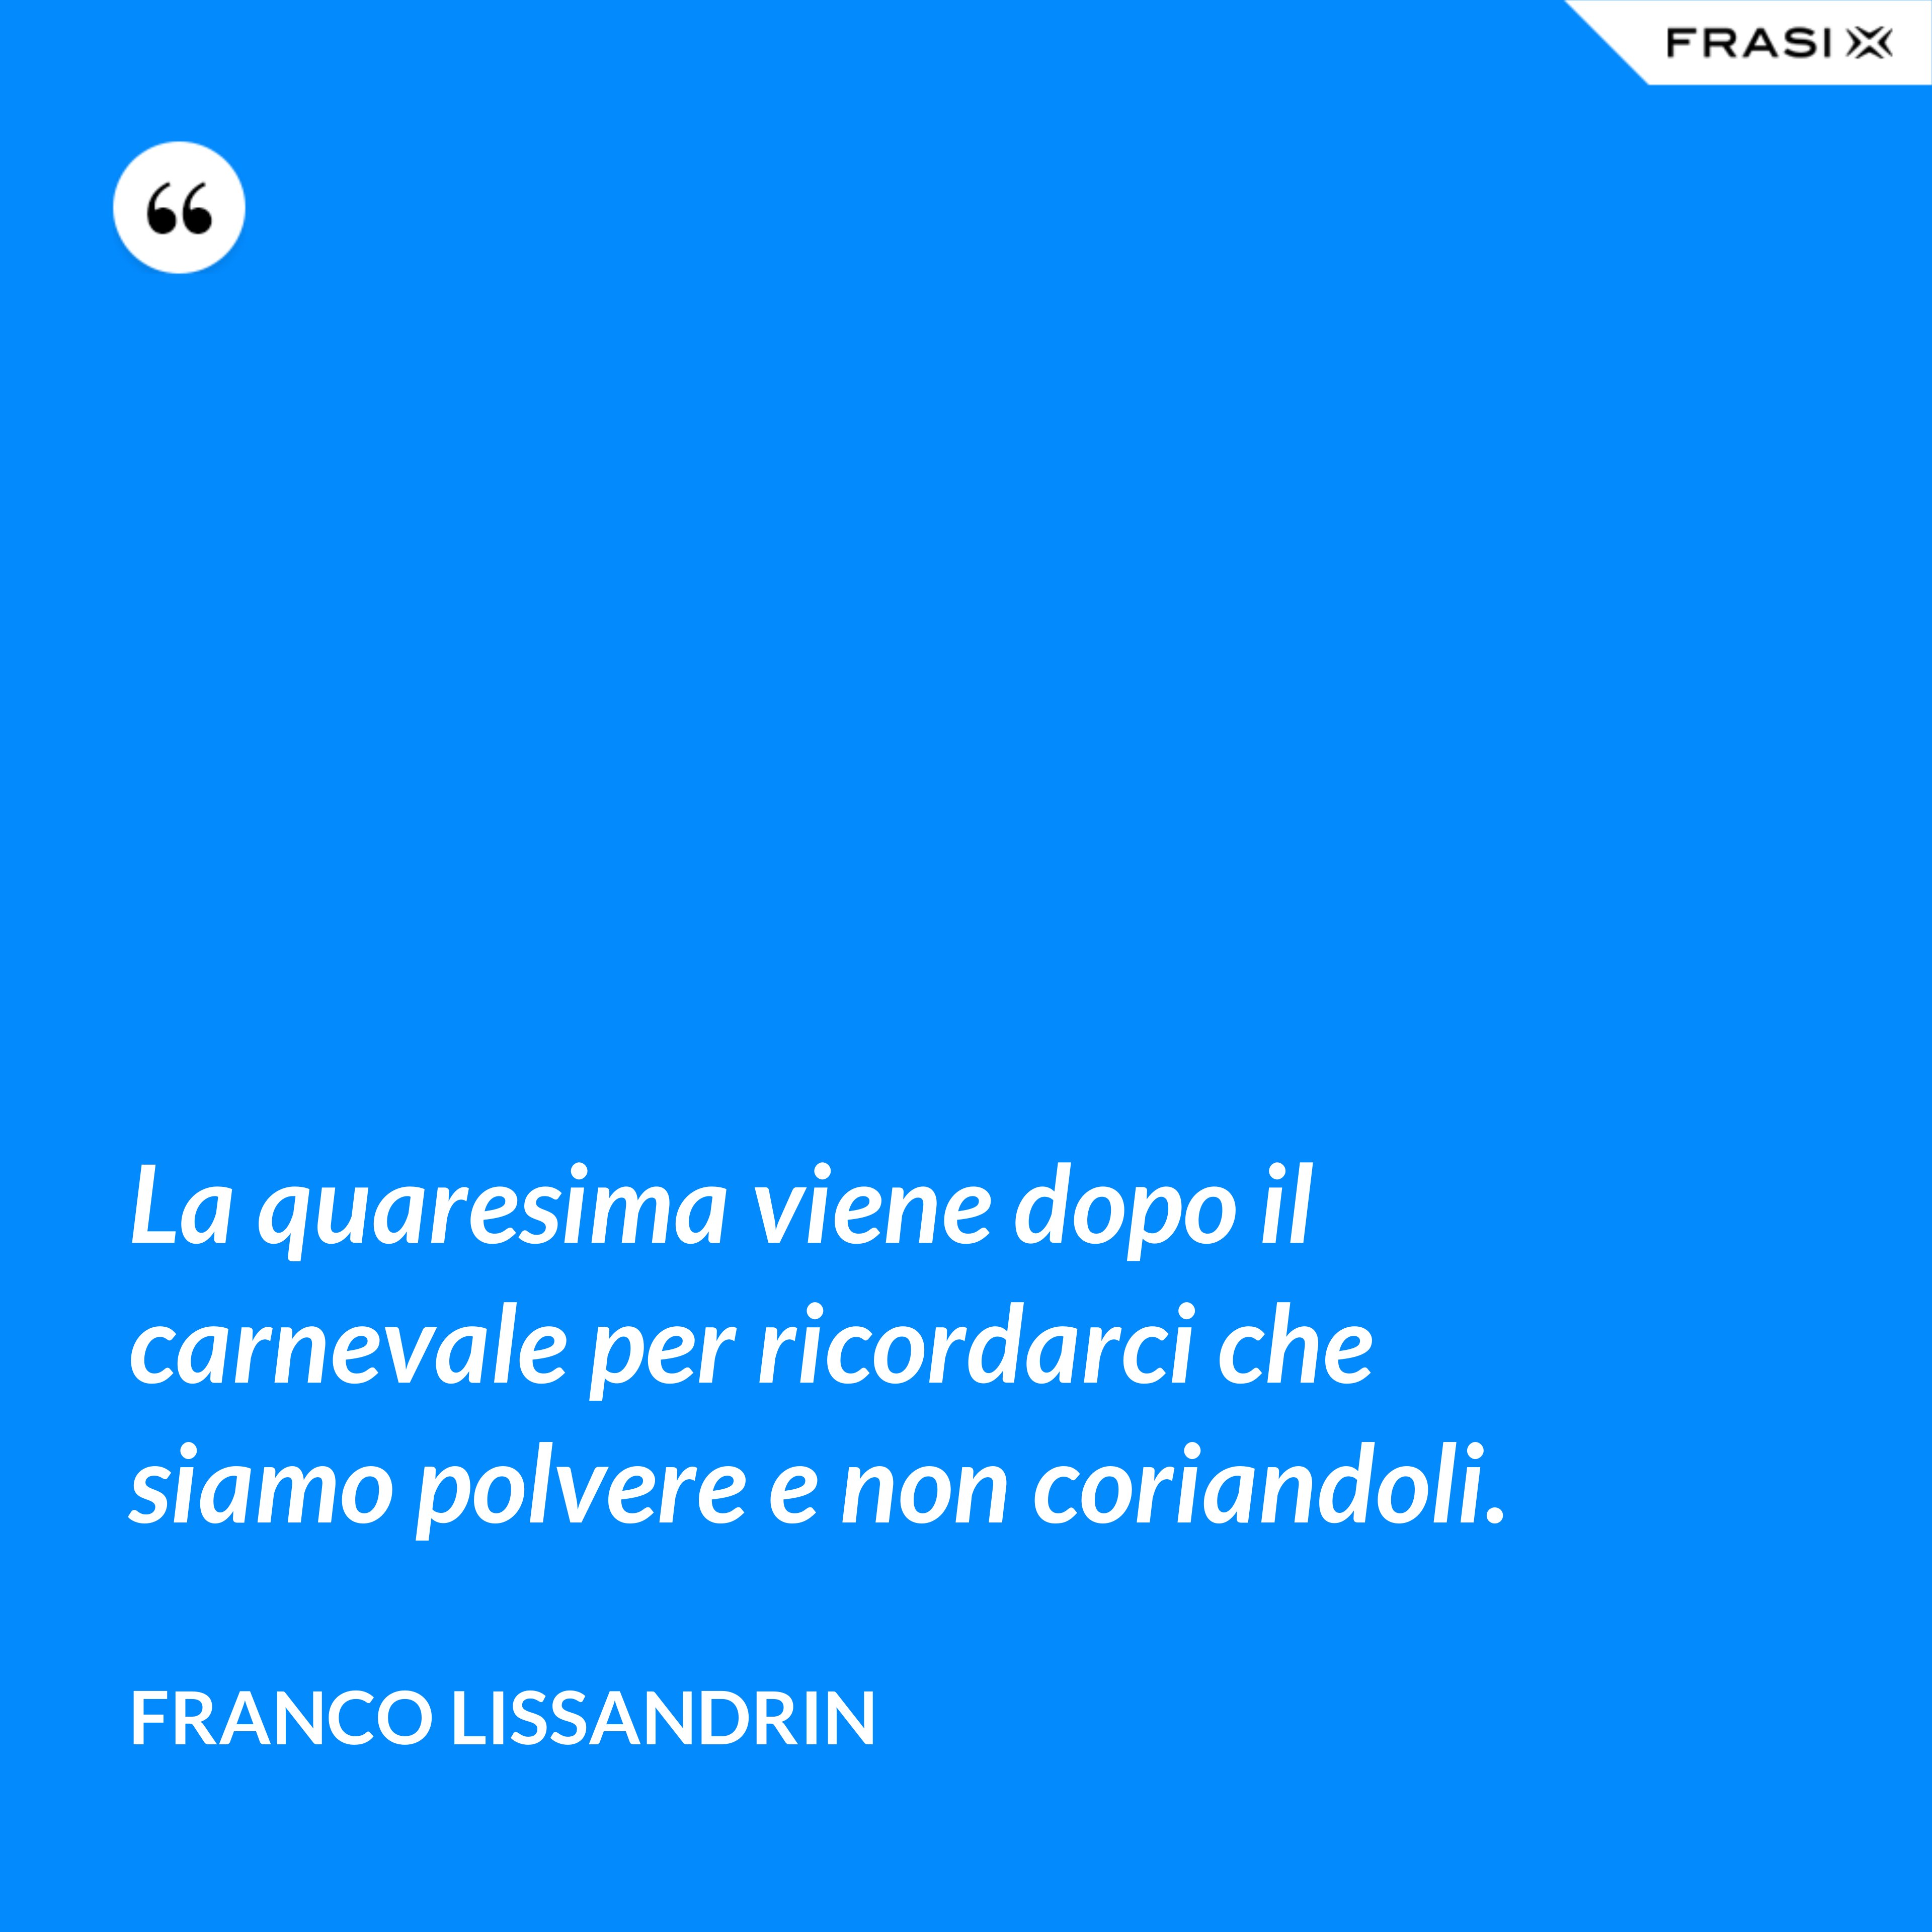 La quaresima viene dopo il carnevale per ricordarci che siamo polvere e non coriandoli. - Franco Lissandrin